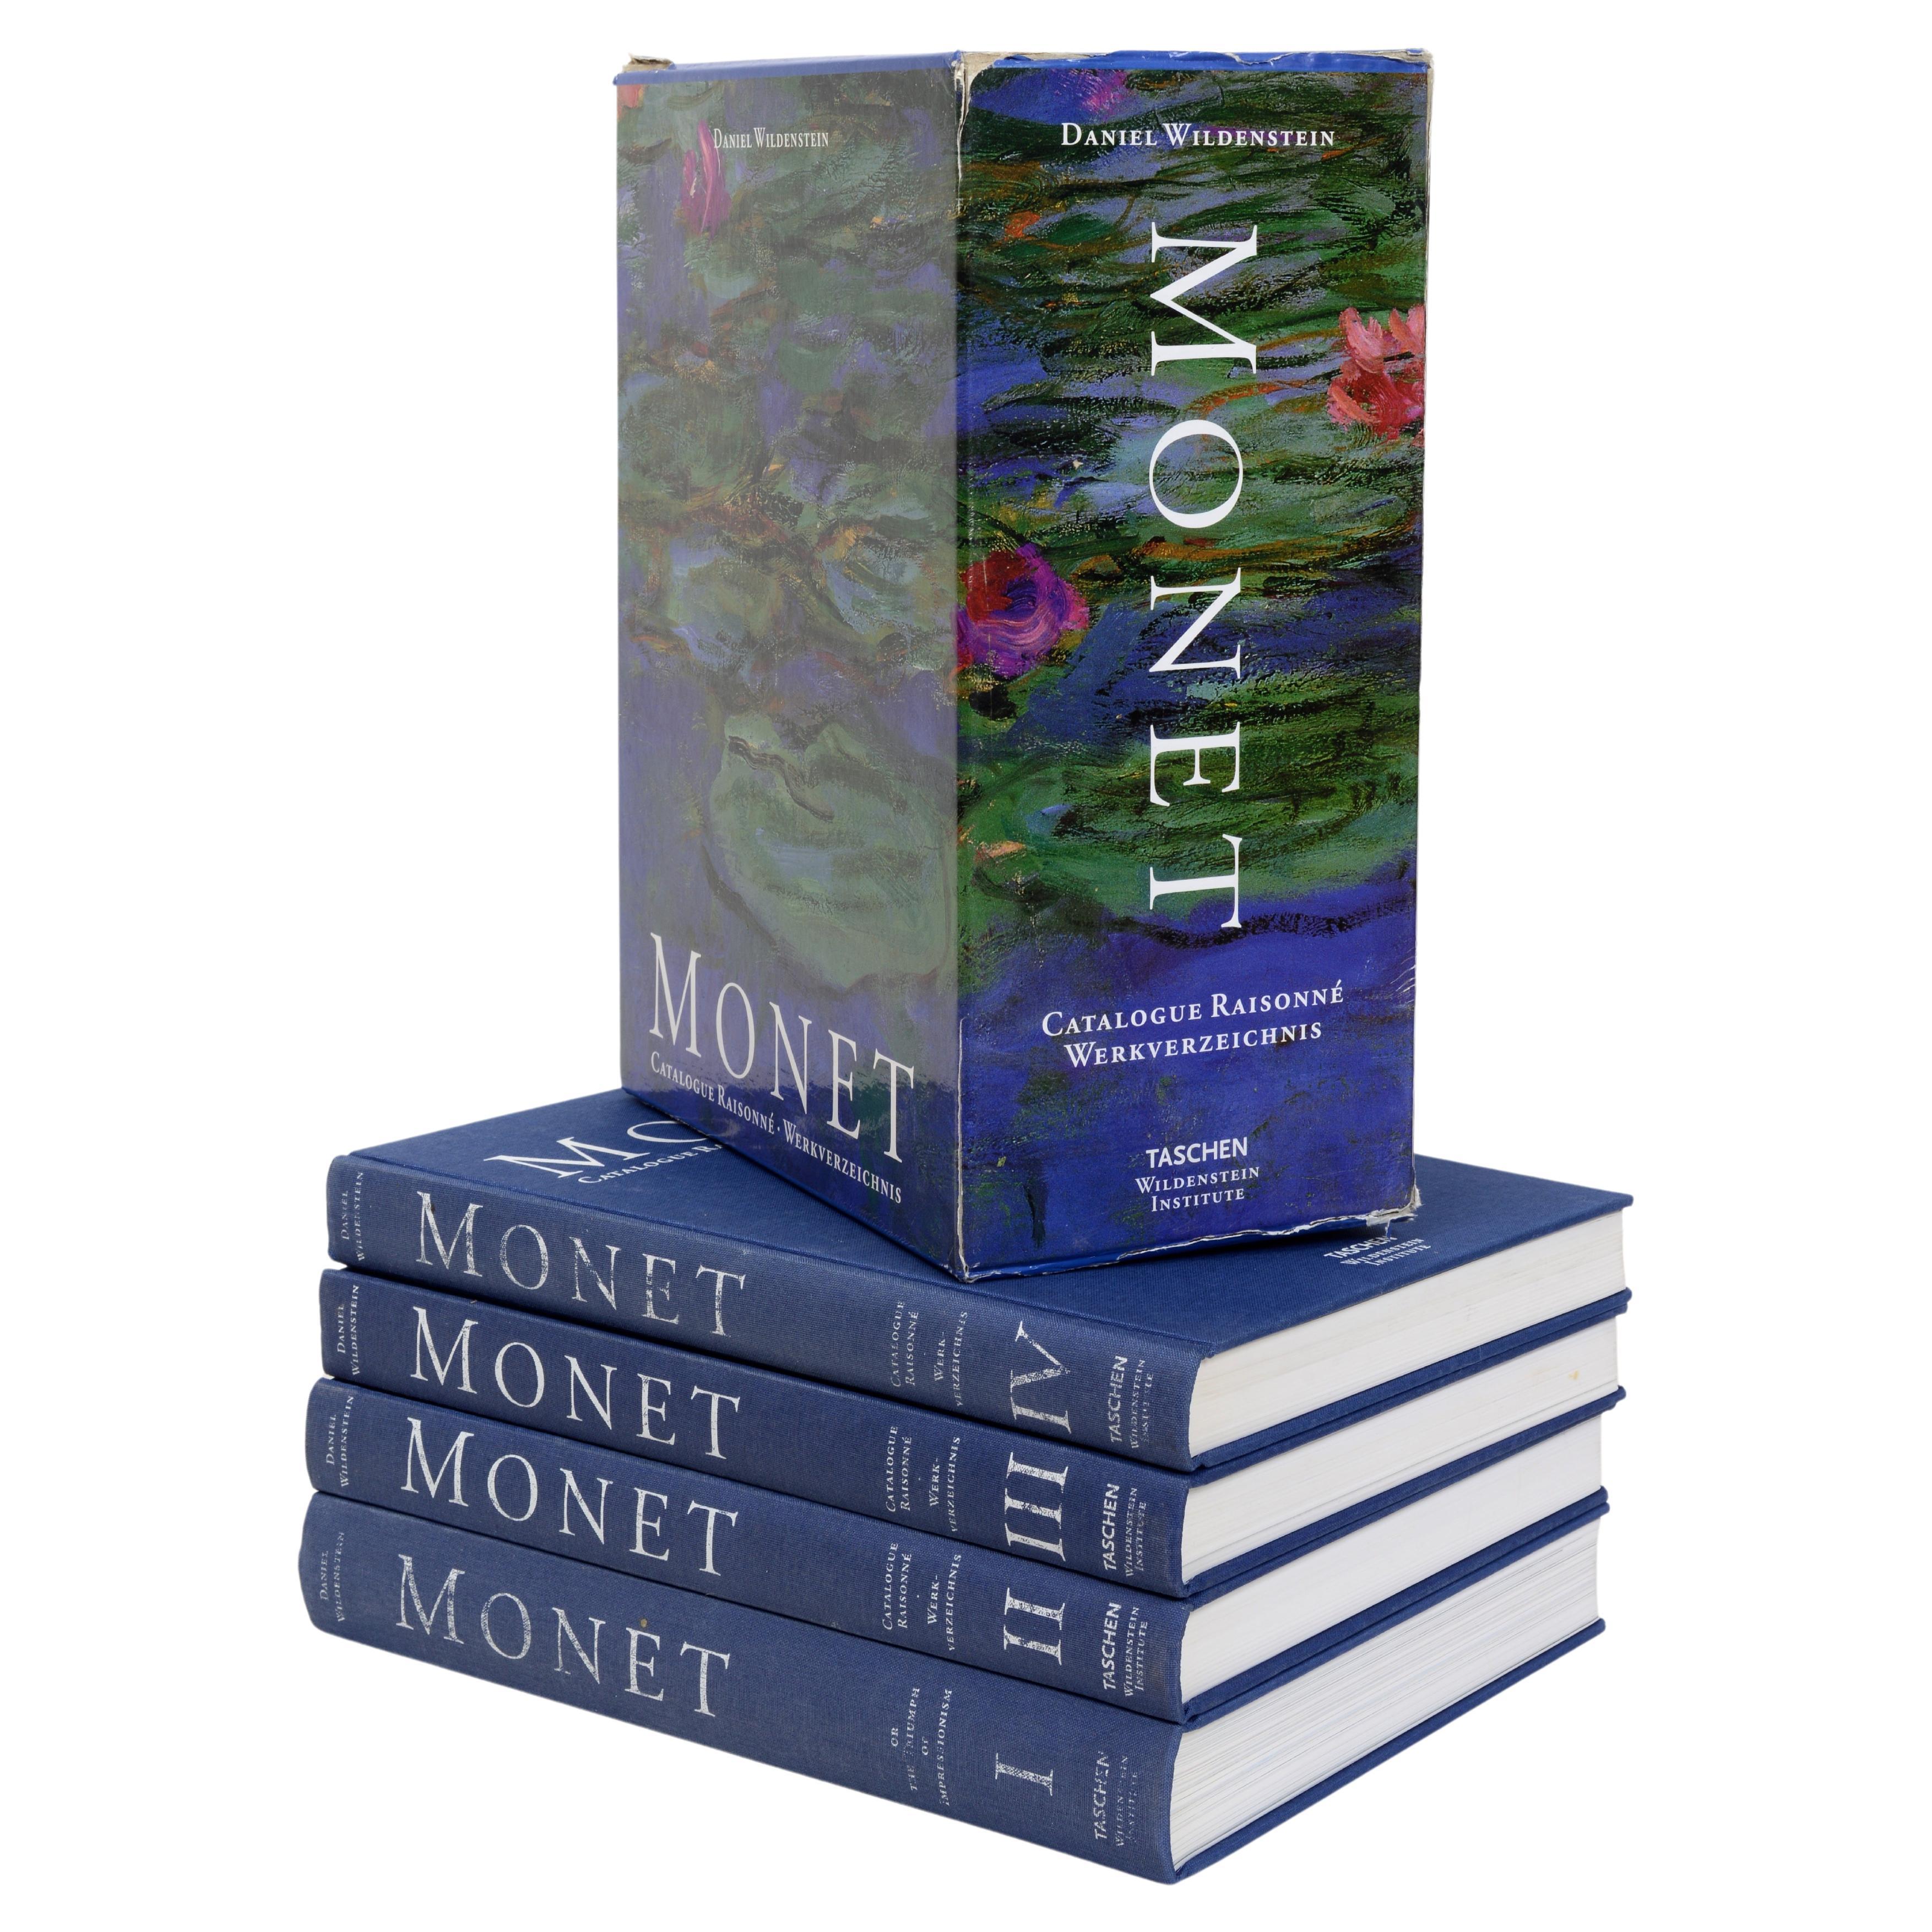 Monet, ou le triomphe de l'impressionnisme Catalogue raisonné, 4 volumes